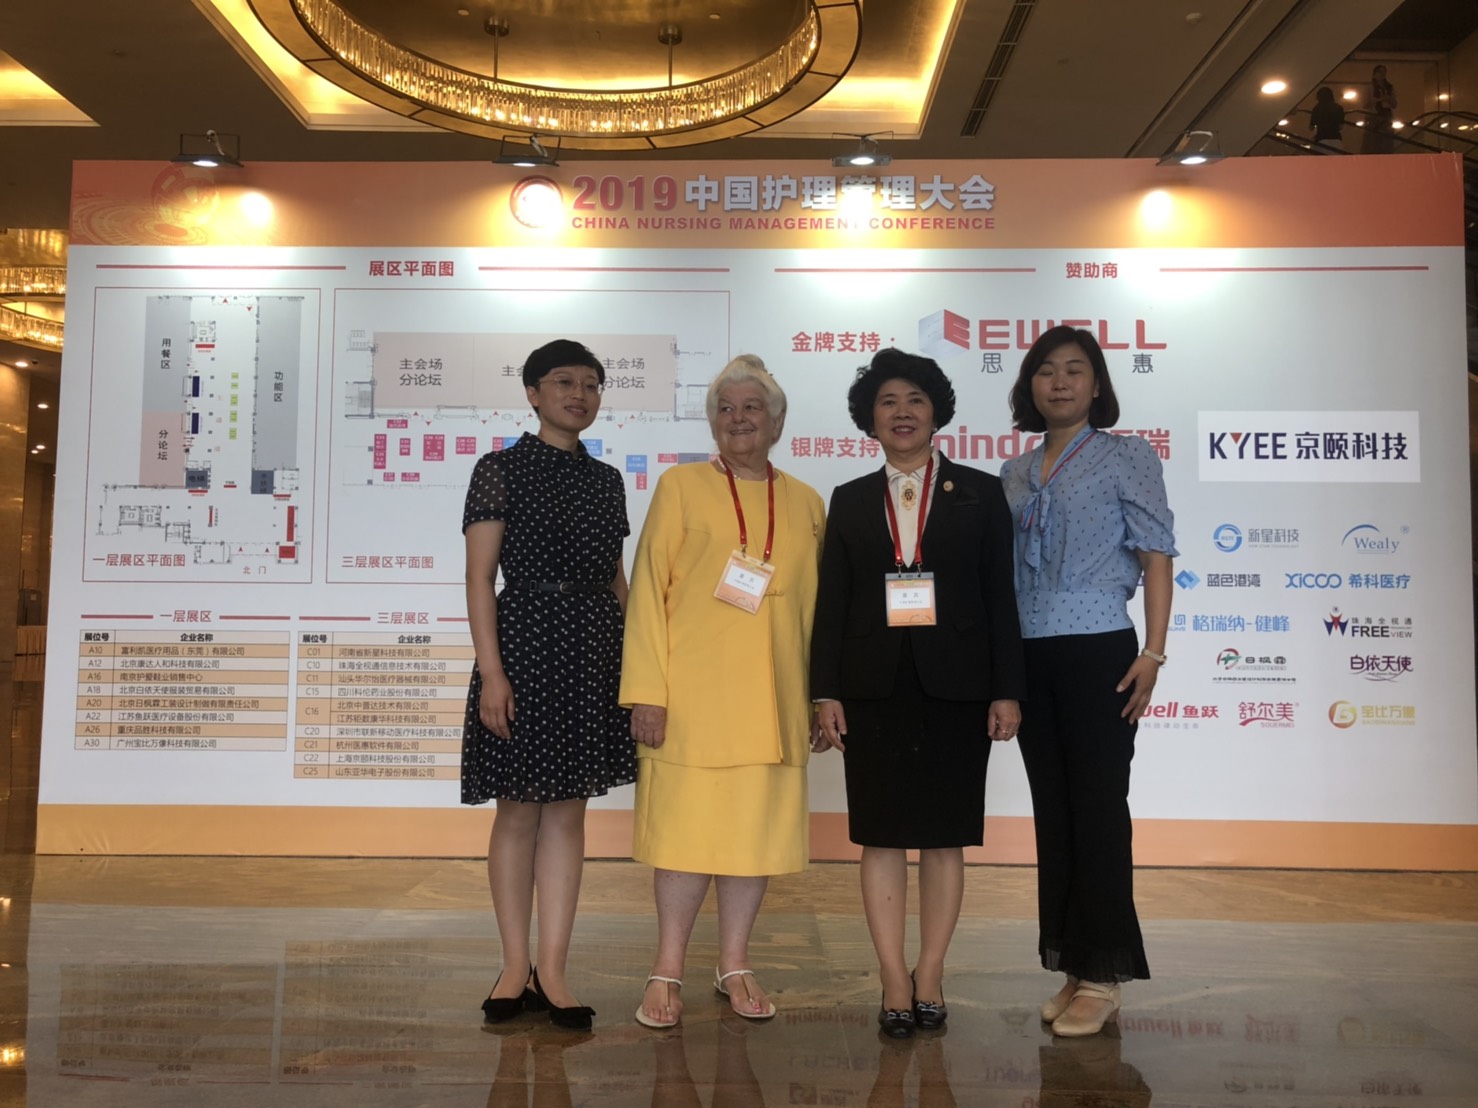 
	คณบดีได้รับเชิญเป็นวิทยากรในการประชุมวิชาการนานาชาติ Chinese Nursing Management Conference
